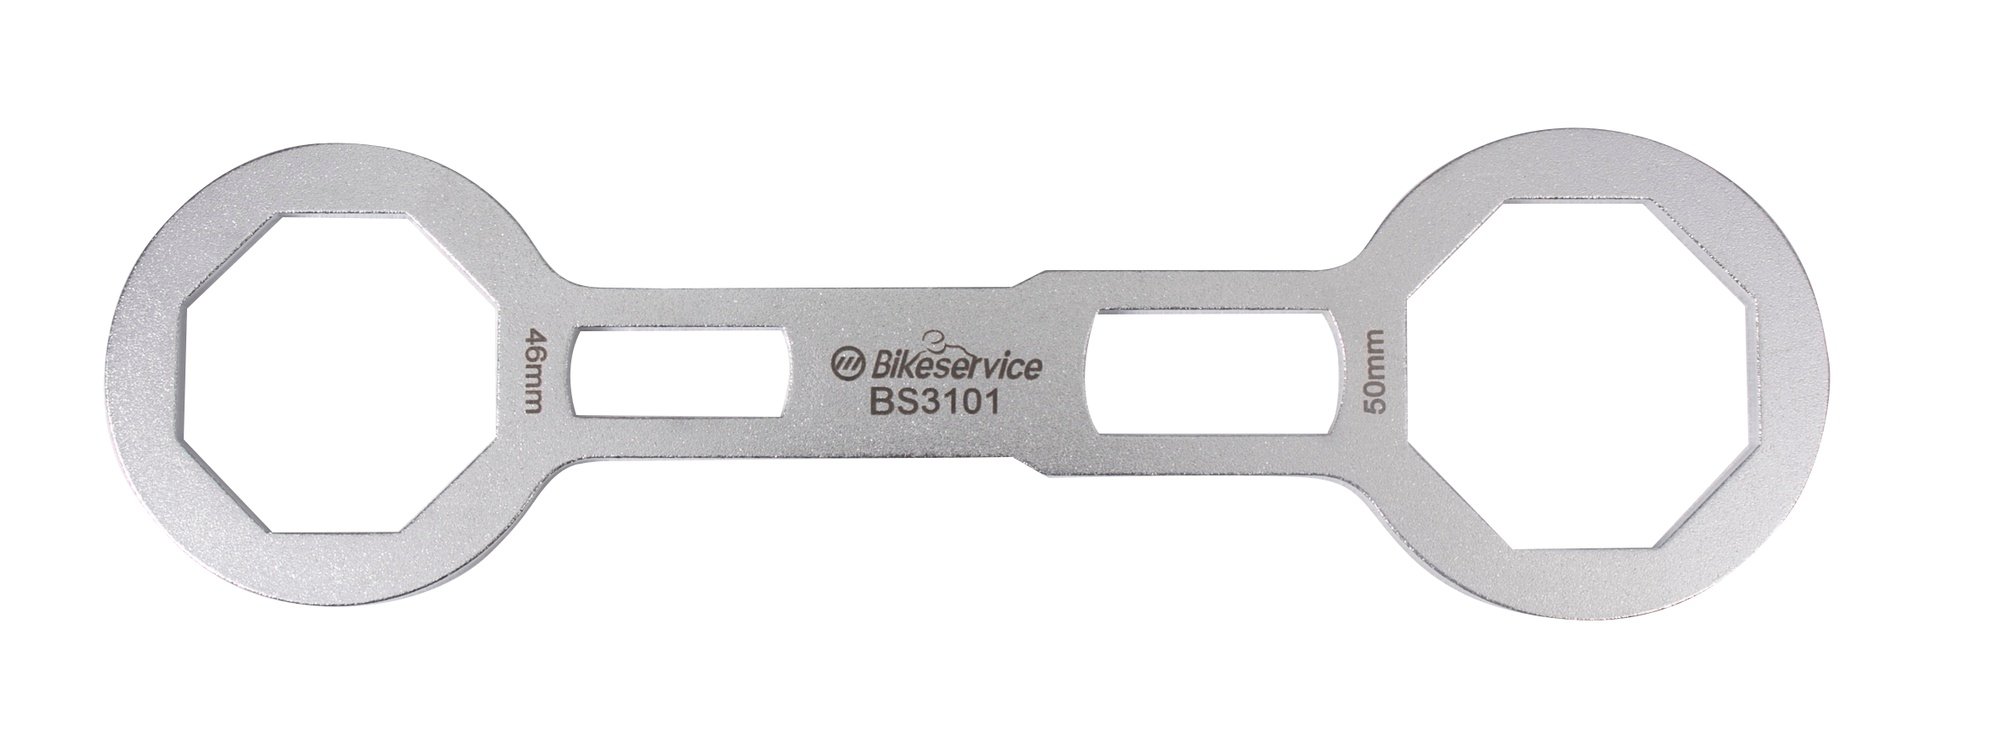 Obrázek produktu uzavřený osmihranný klíč na přední vidlice (46 x 50 mm), BIKESERVICE BS3101